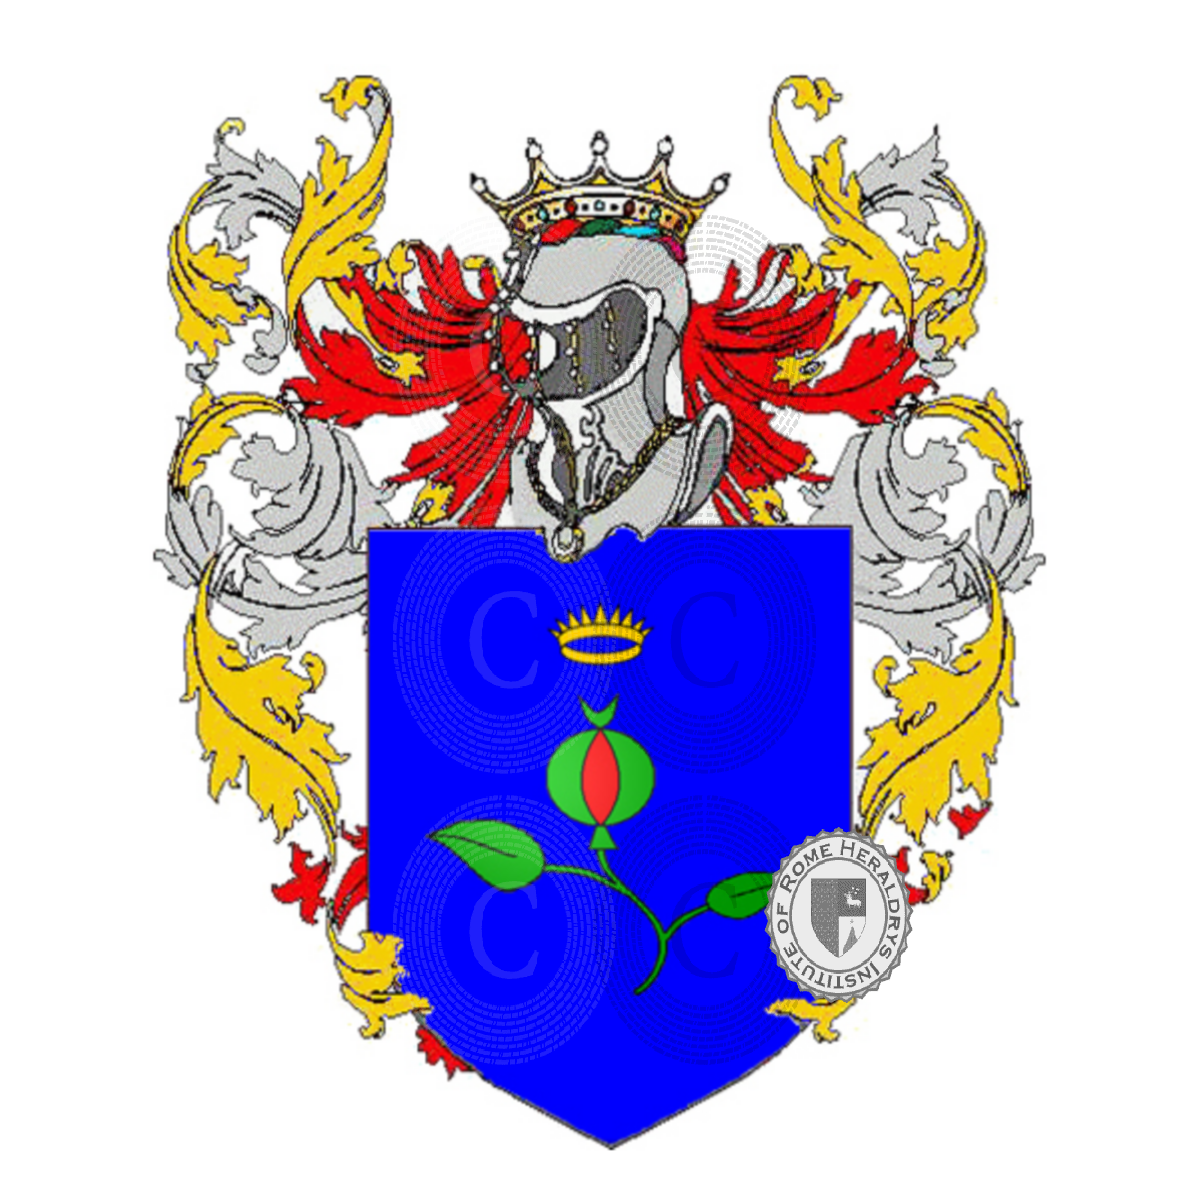 Coat of arms of familygranata